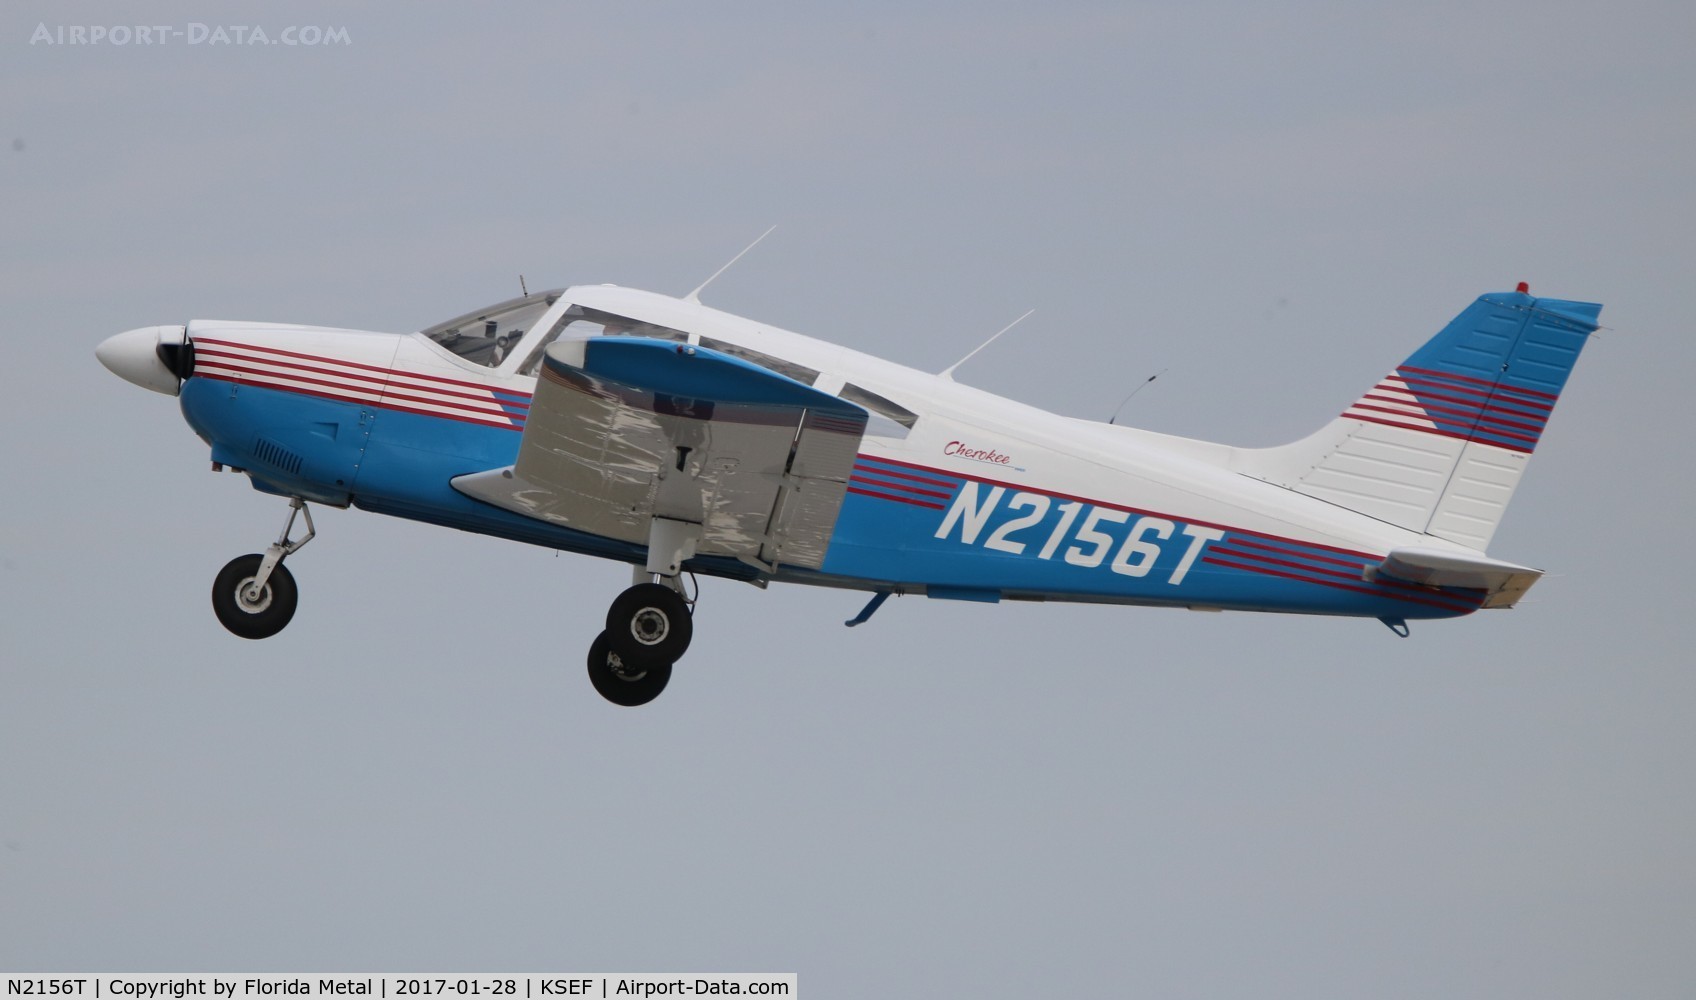 N2156T, 1971 Piper PA-28-180 C/N 28-7205006, PA-28-180